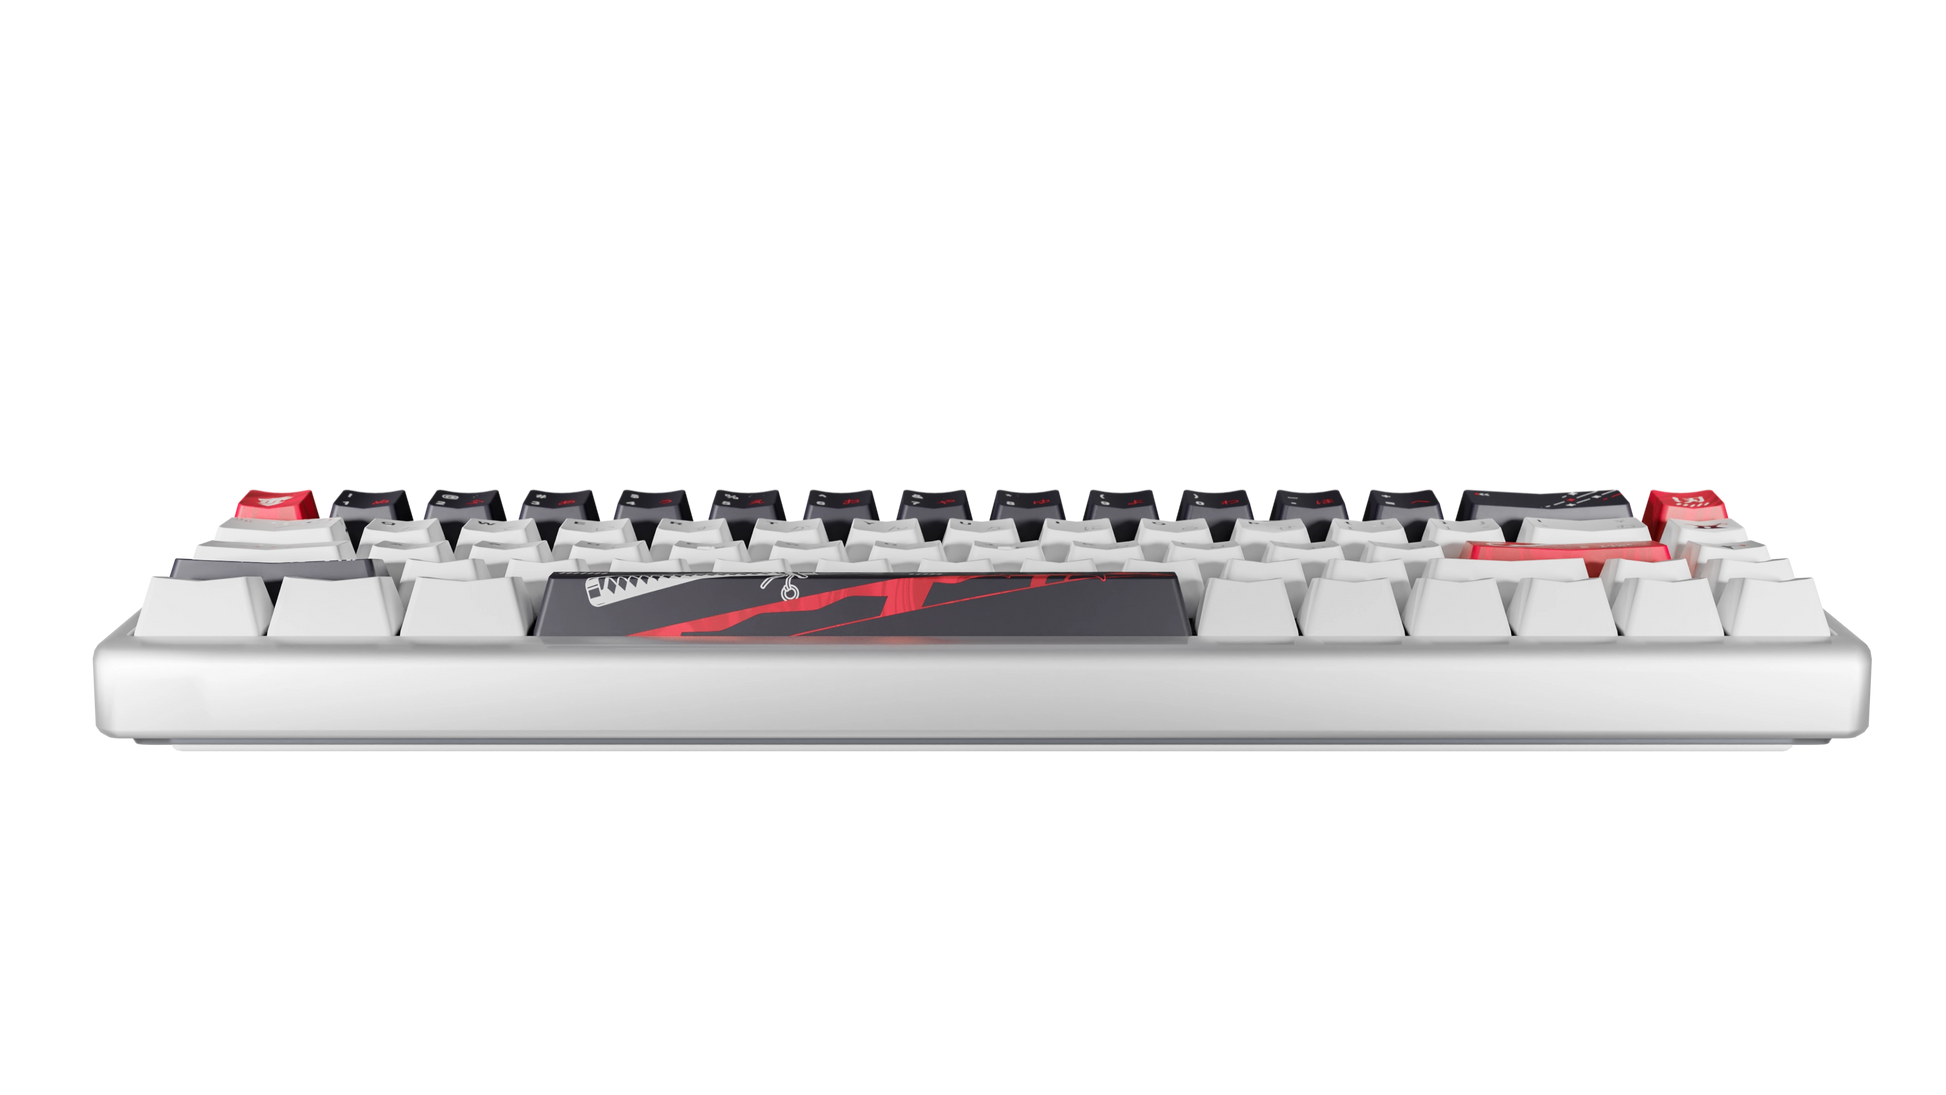 YukiAim Polar 65 Keyboard Katana Edition1050g - キーボード